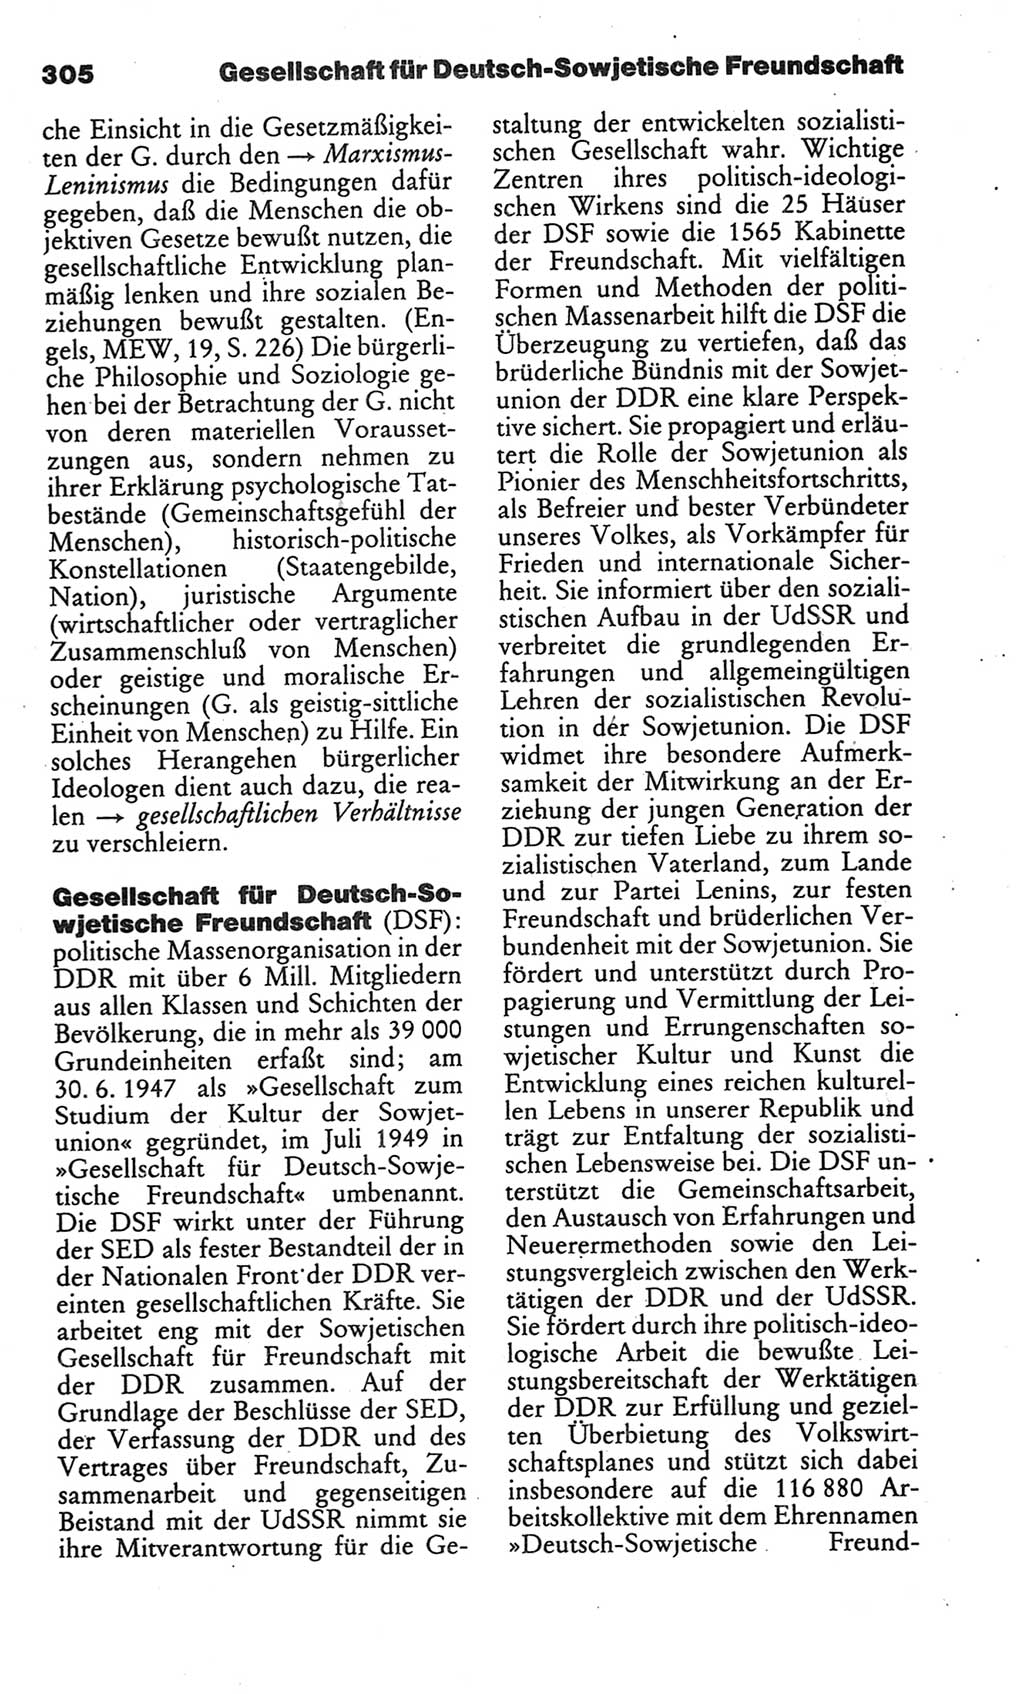 Kleines politisches Wörterbuch [Deutsche Demokratische Republik (DDR)] 1986, Seite 305 (Kl. pol. Wb. DDR 1986, S. 305)